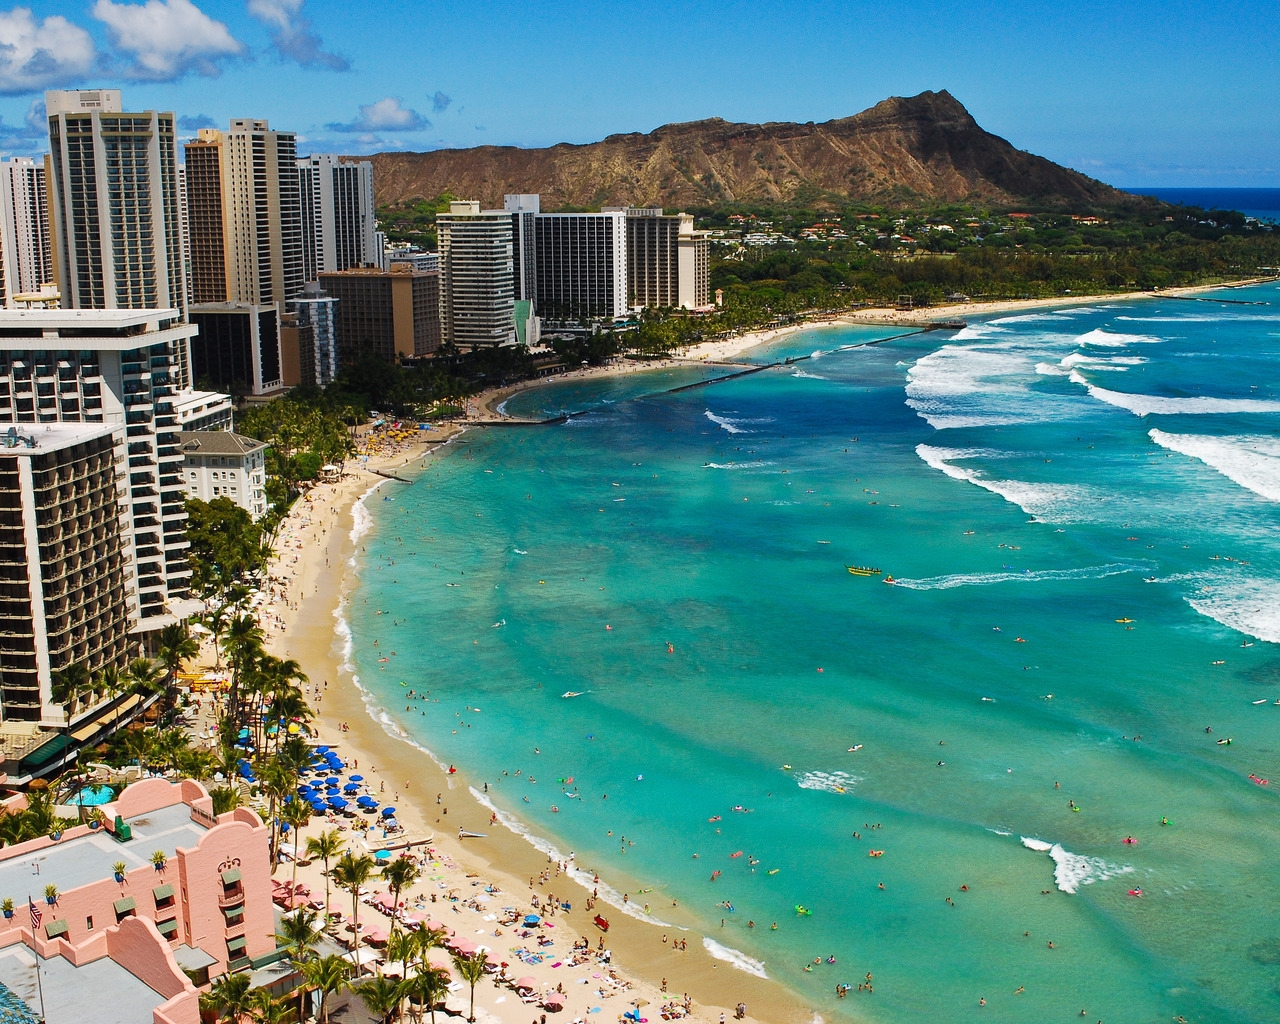 Waikiki Beach Hawaii, for 1280 x 1024 resolution